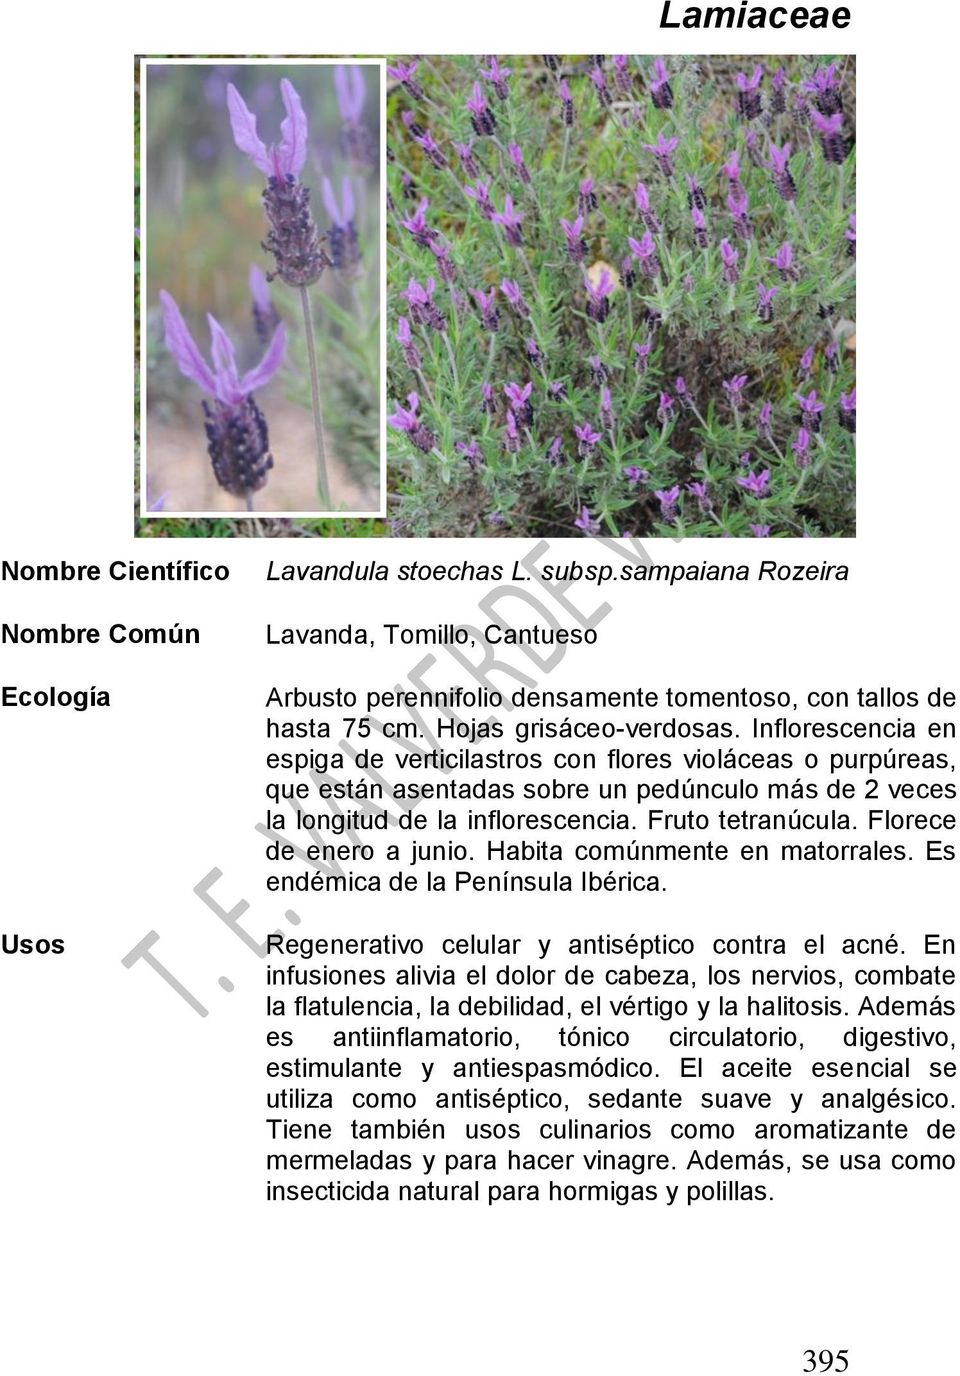 Florece de enero a junio. Habita comúnmente en matorrales. Es endémica de la Península Ibérica. Regenerativo celular y antiséptico contra el acné.